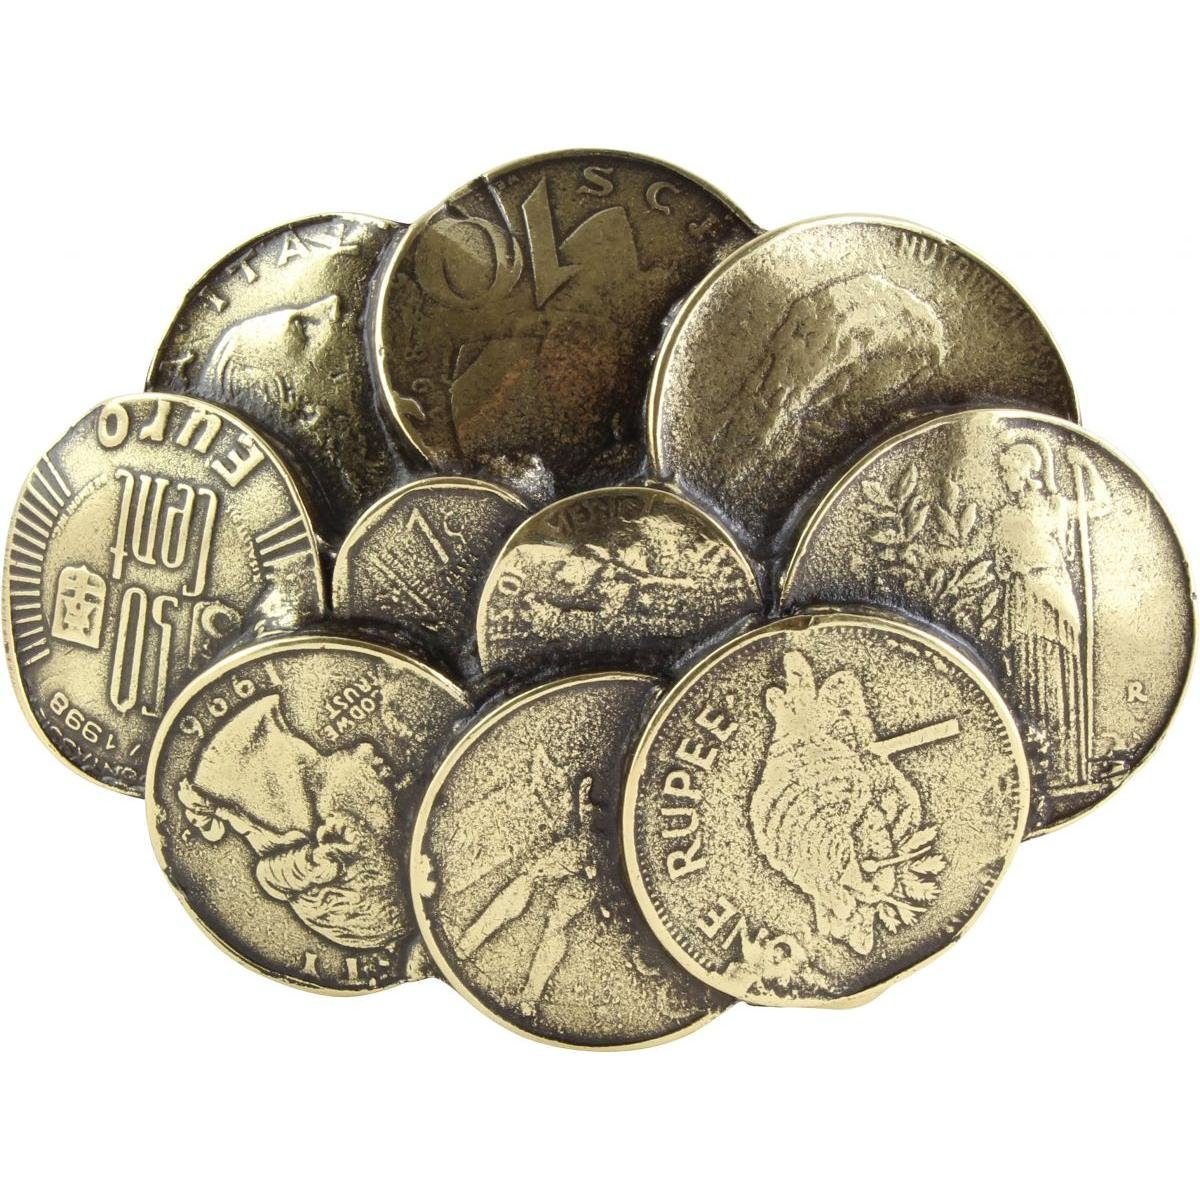 BELTINGER Gürtelschnalle Coins 4,0 cm - Buckle Wechselschließe Gürtelschließe 40mm - Gürtel bis